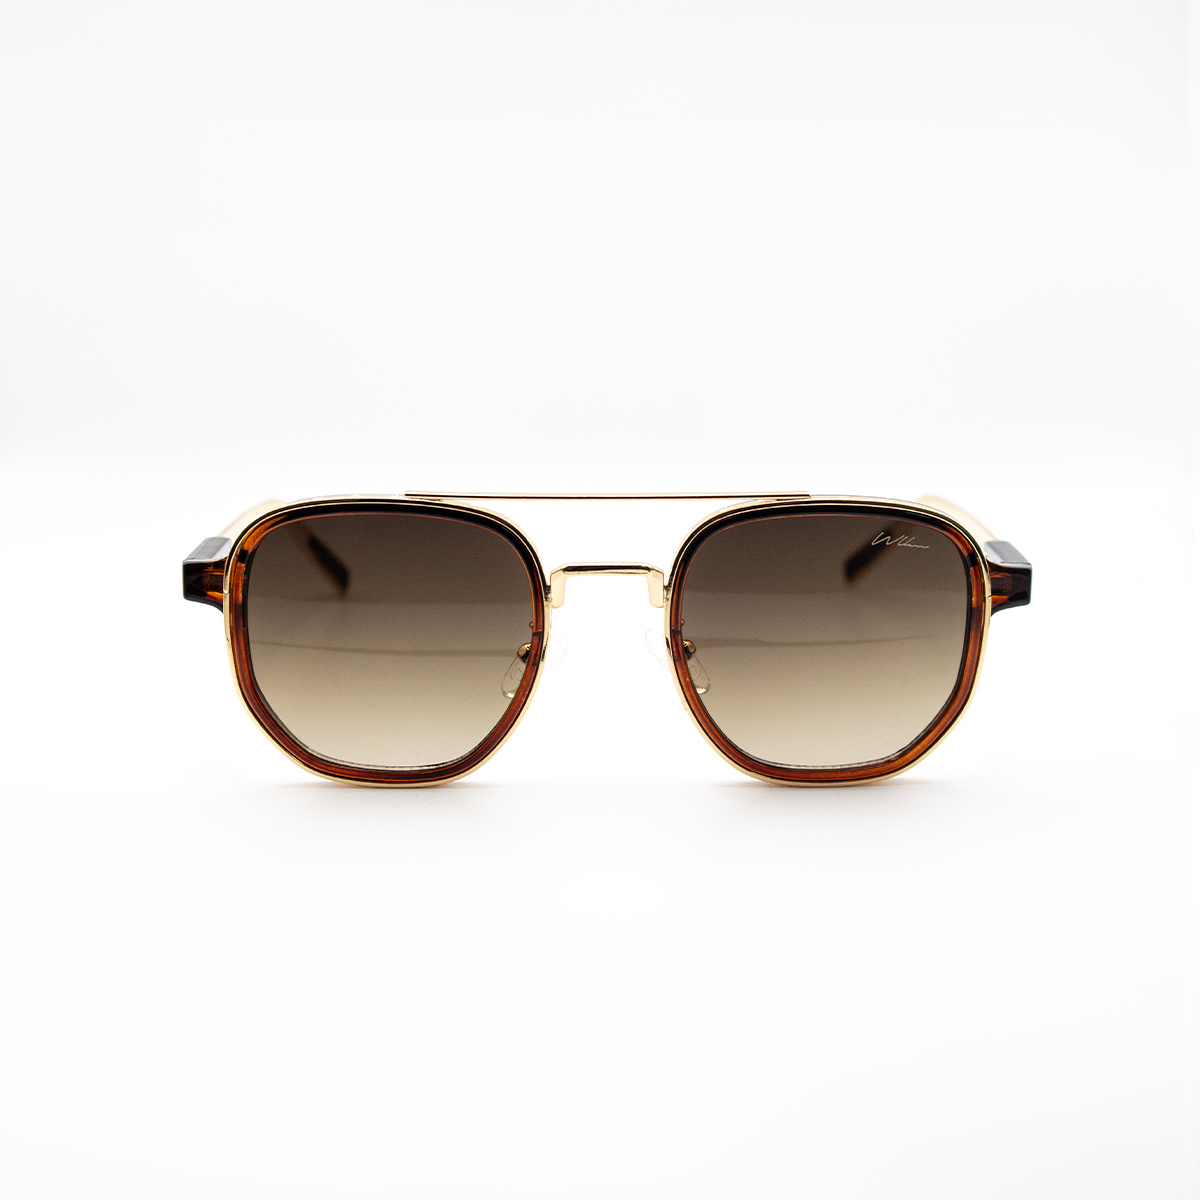 WLKN WLKN : Seeley Gold Frame Sunglasses - Brown